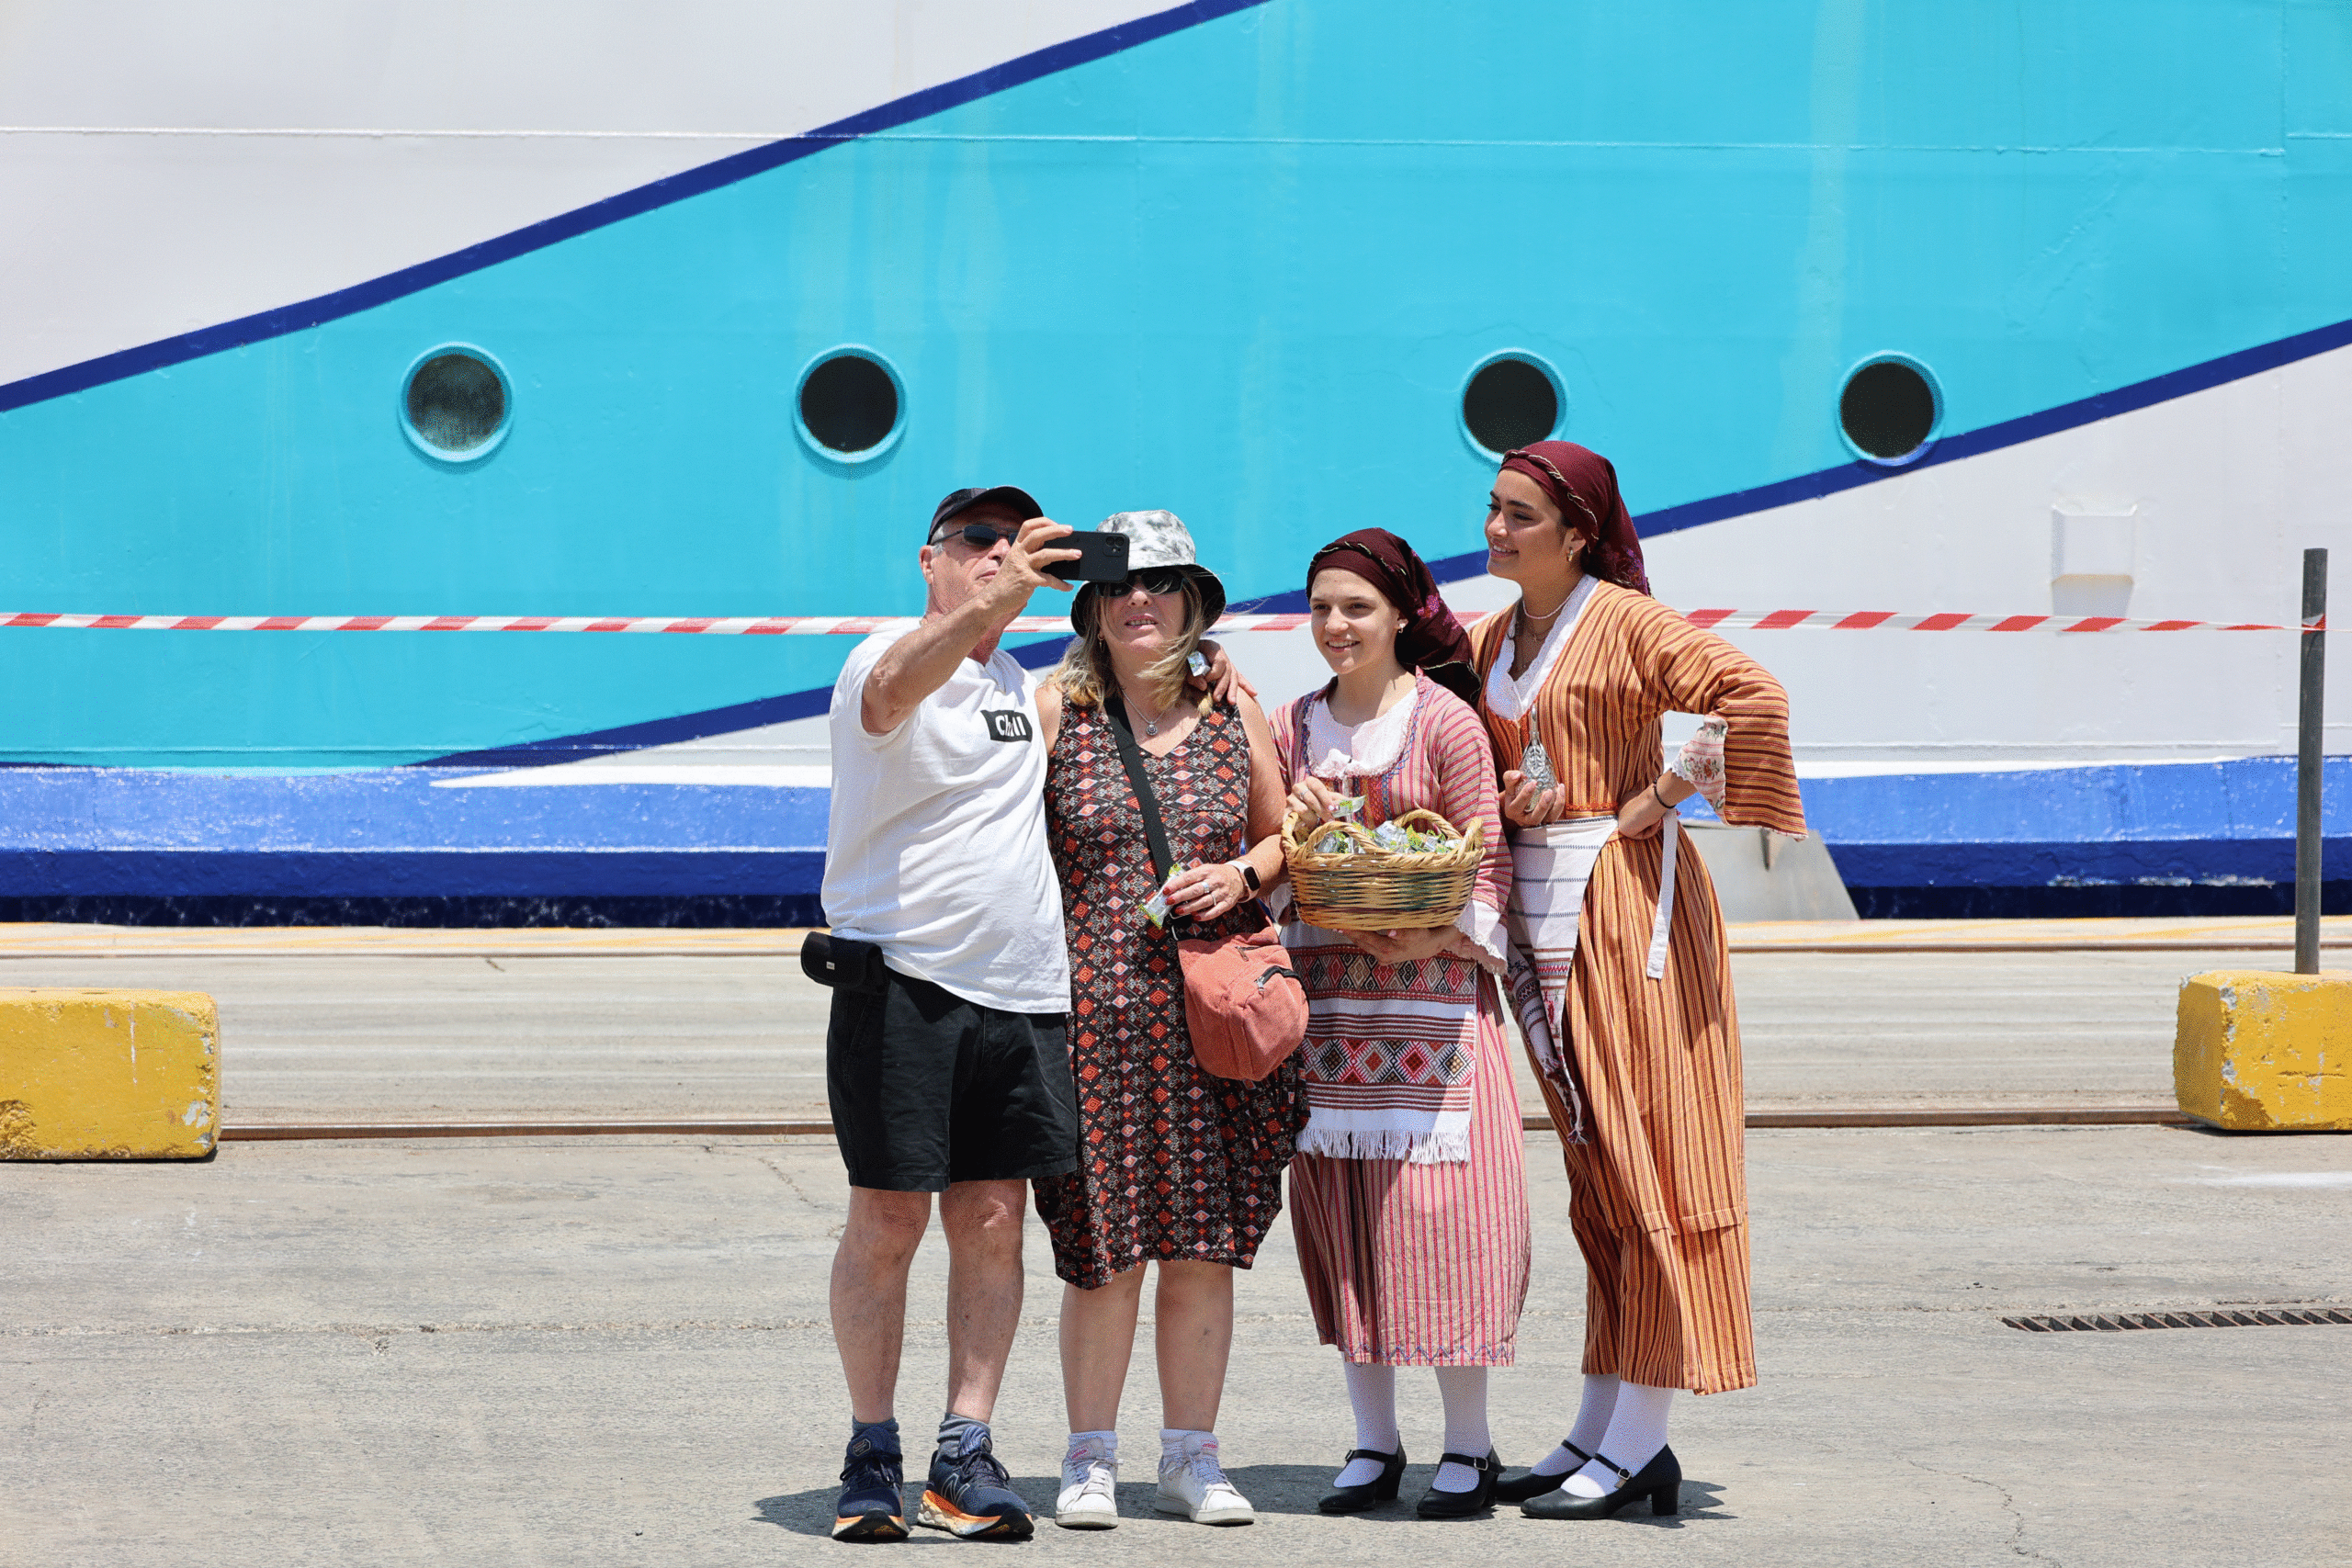 Με παραδοσιακούς χορούς, μουσική και εδέσματα, η υποδοχή του πρώτου πλοίου της Mano Cruises στο Λιμάνι της Λάρνακας